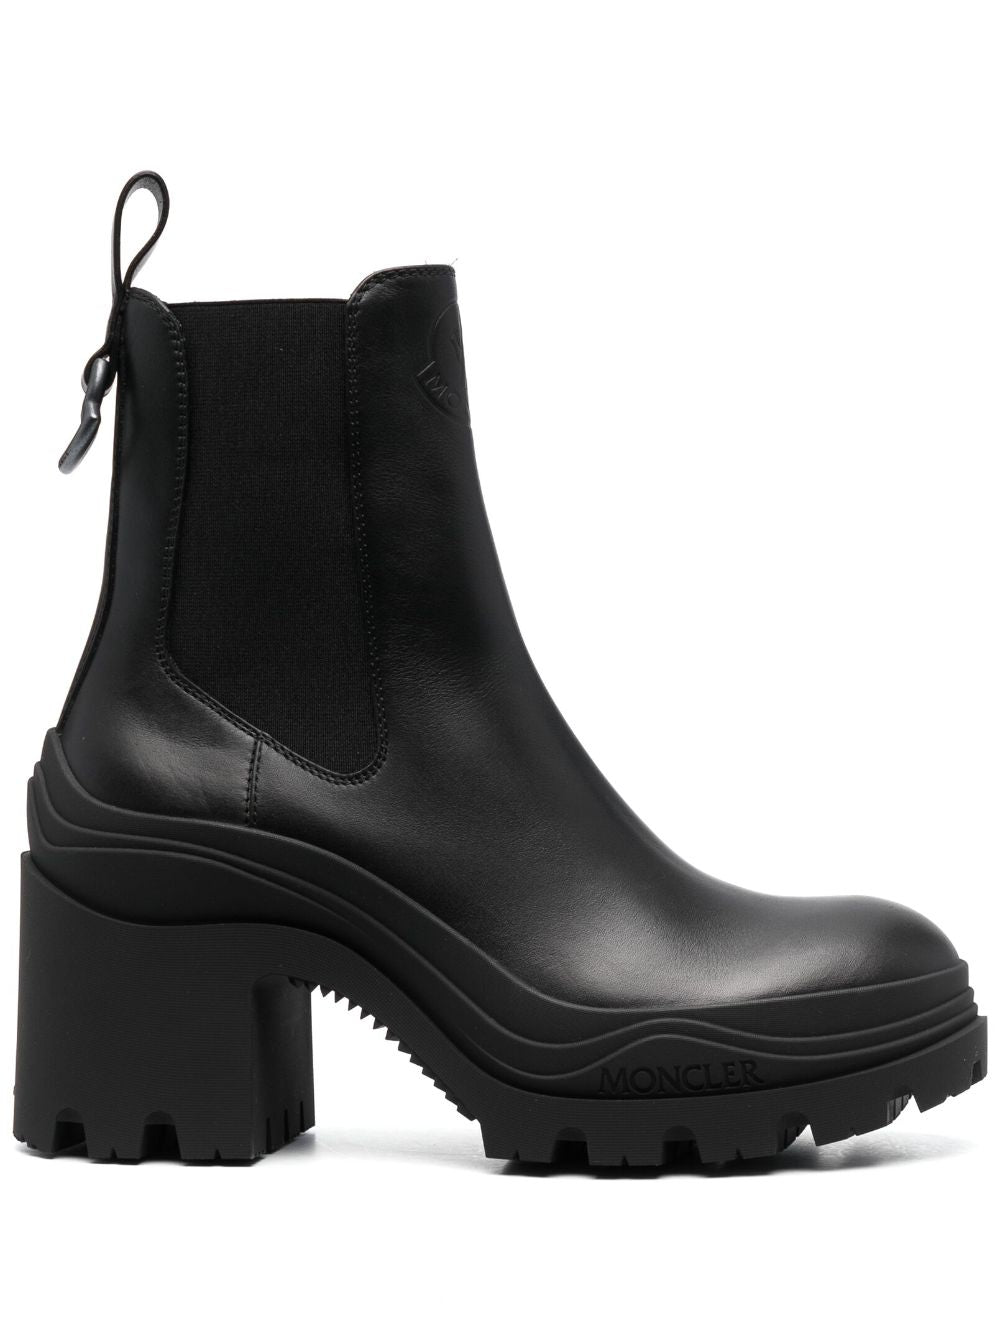 Đôi giày bốt Chelsea đen cho nữ - Bộ sưu tập FW23